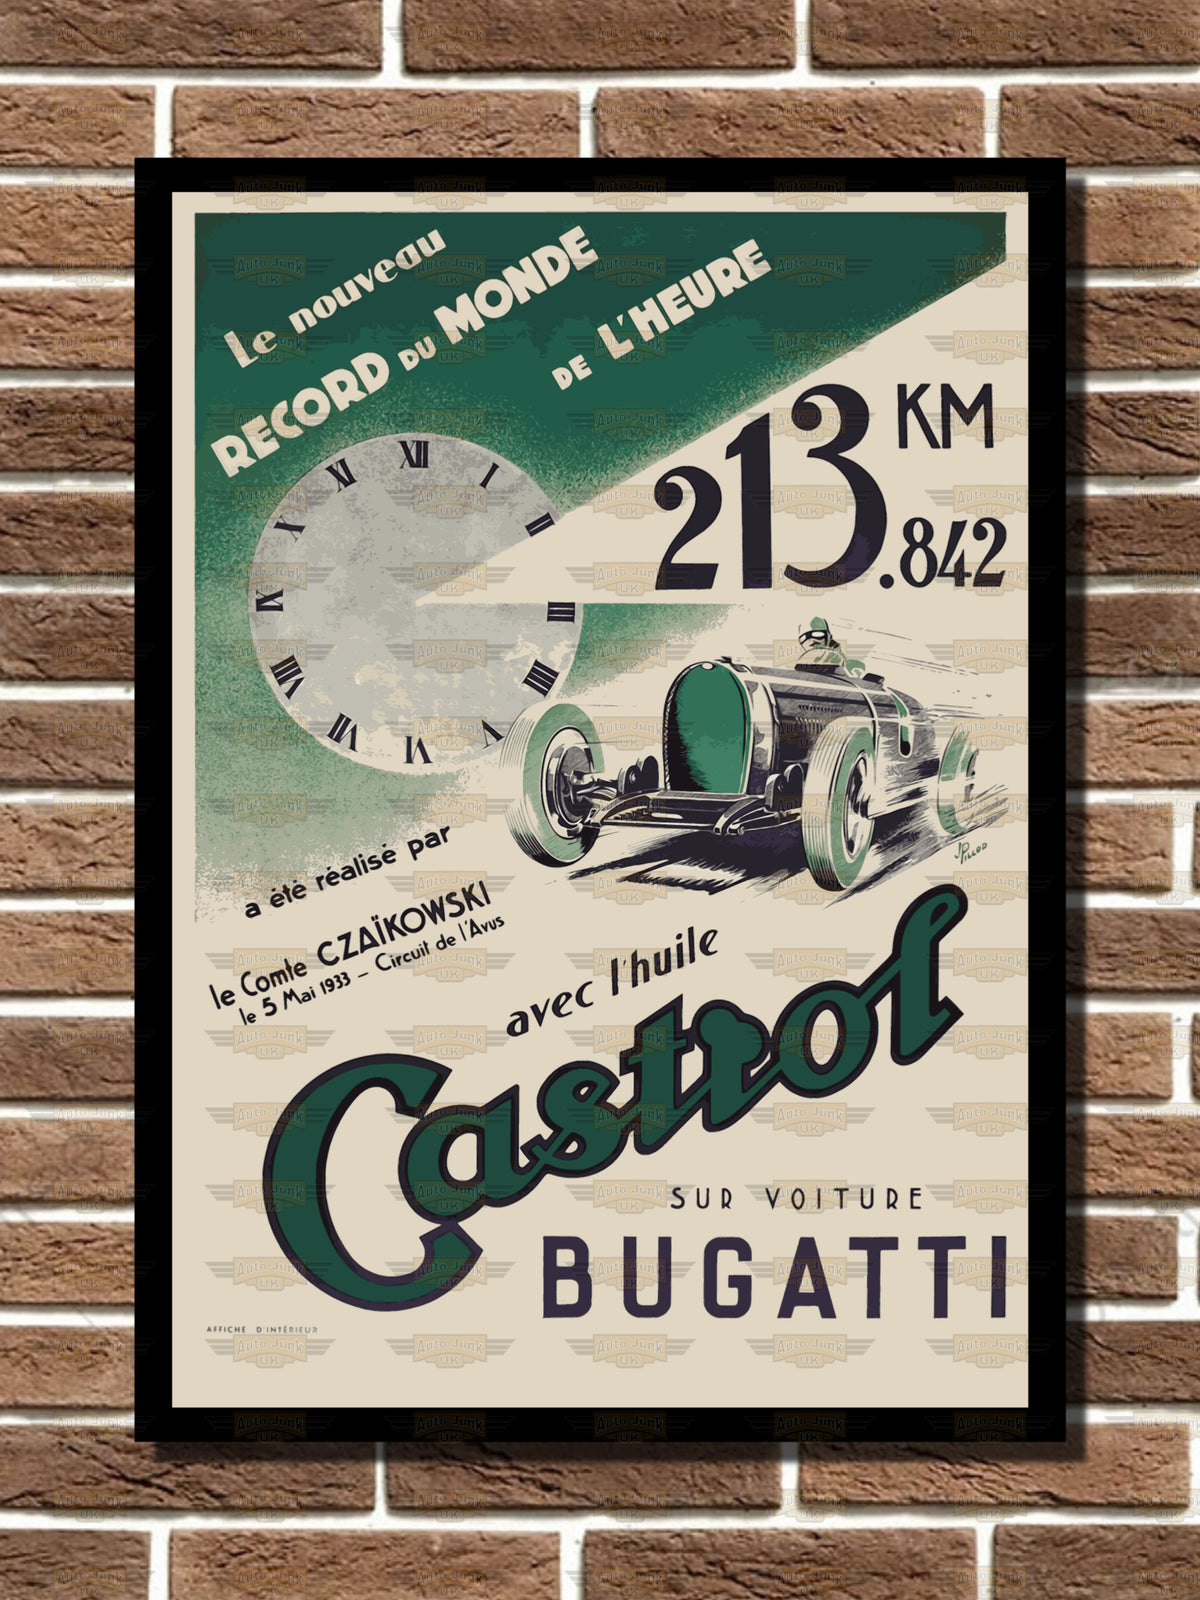 Bugatti Castrol World Record Poster Metal Sign